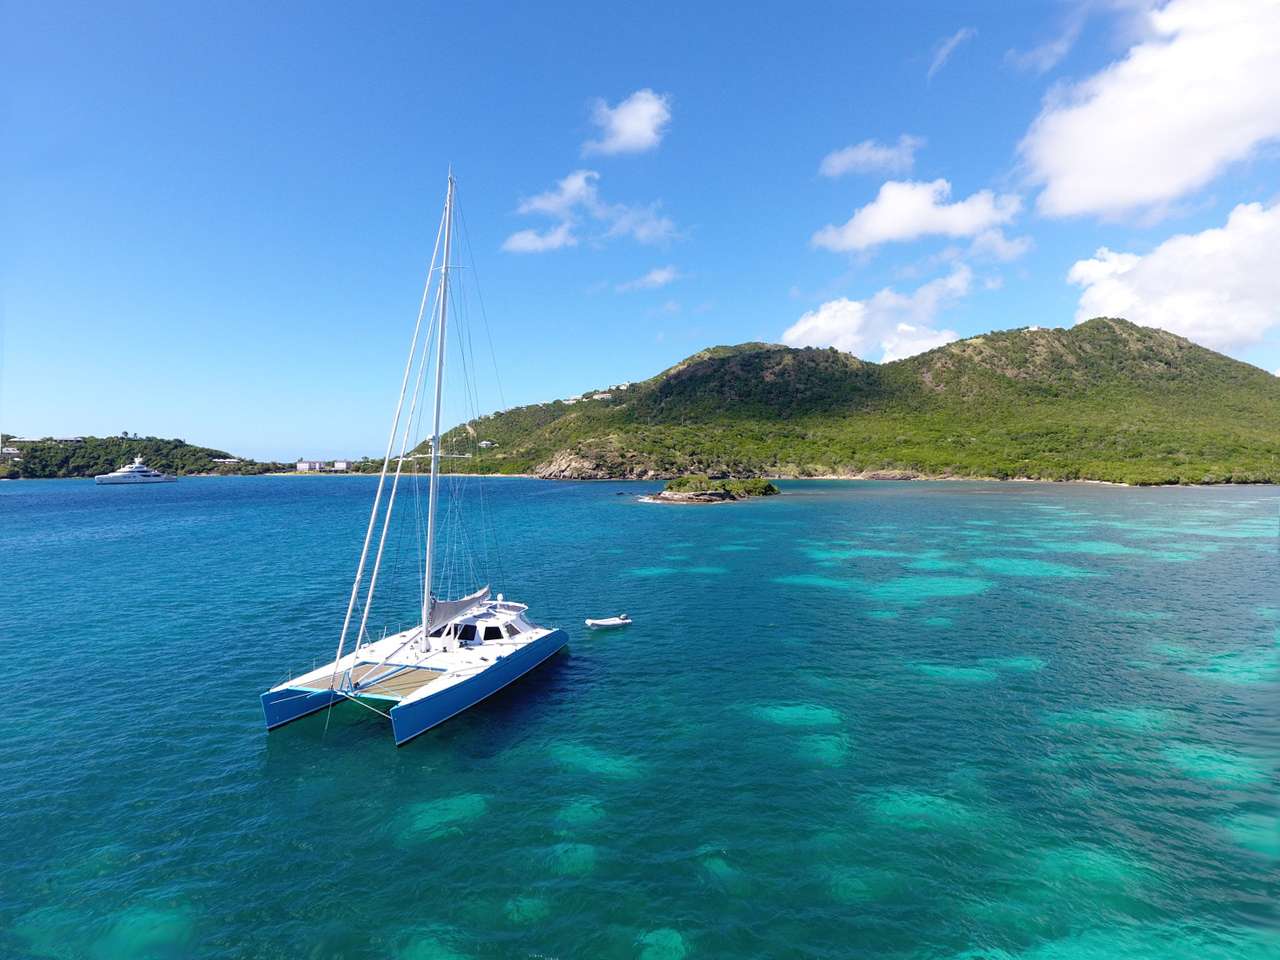 skylark - Luxury yacht charter Grenada & Boat hire in Caribbean 1